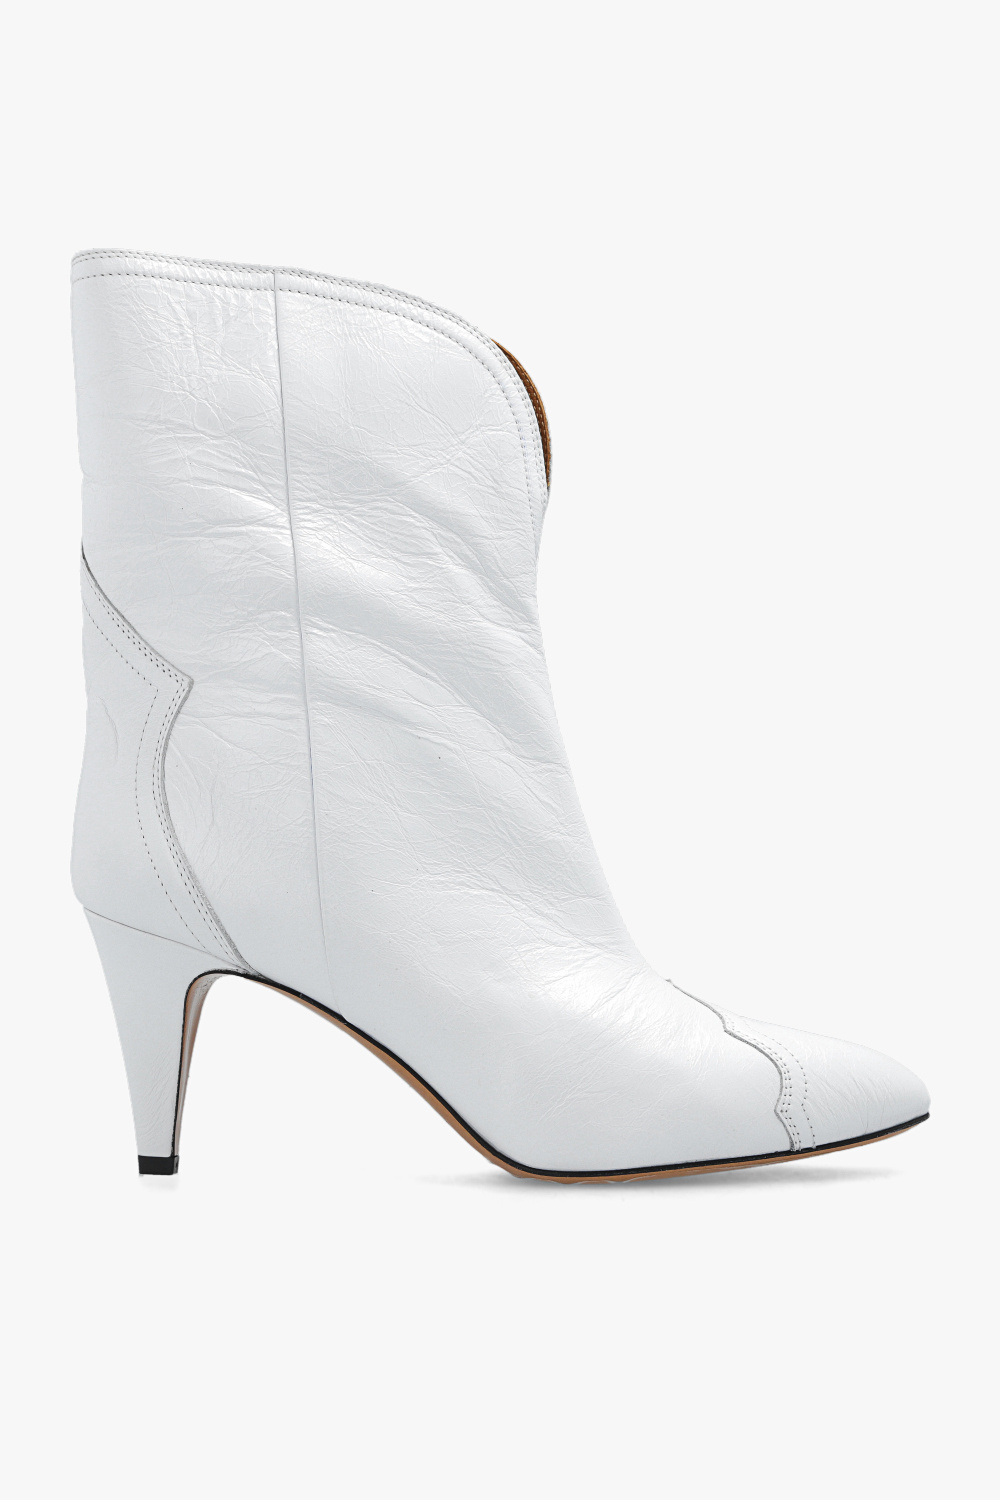 Isabel Marant ‘Dytho’ leather heeled boots